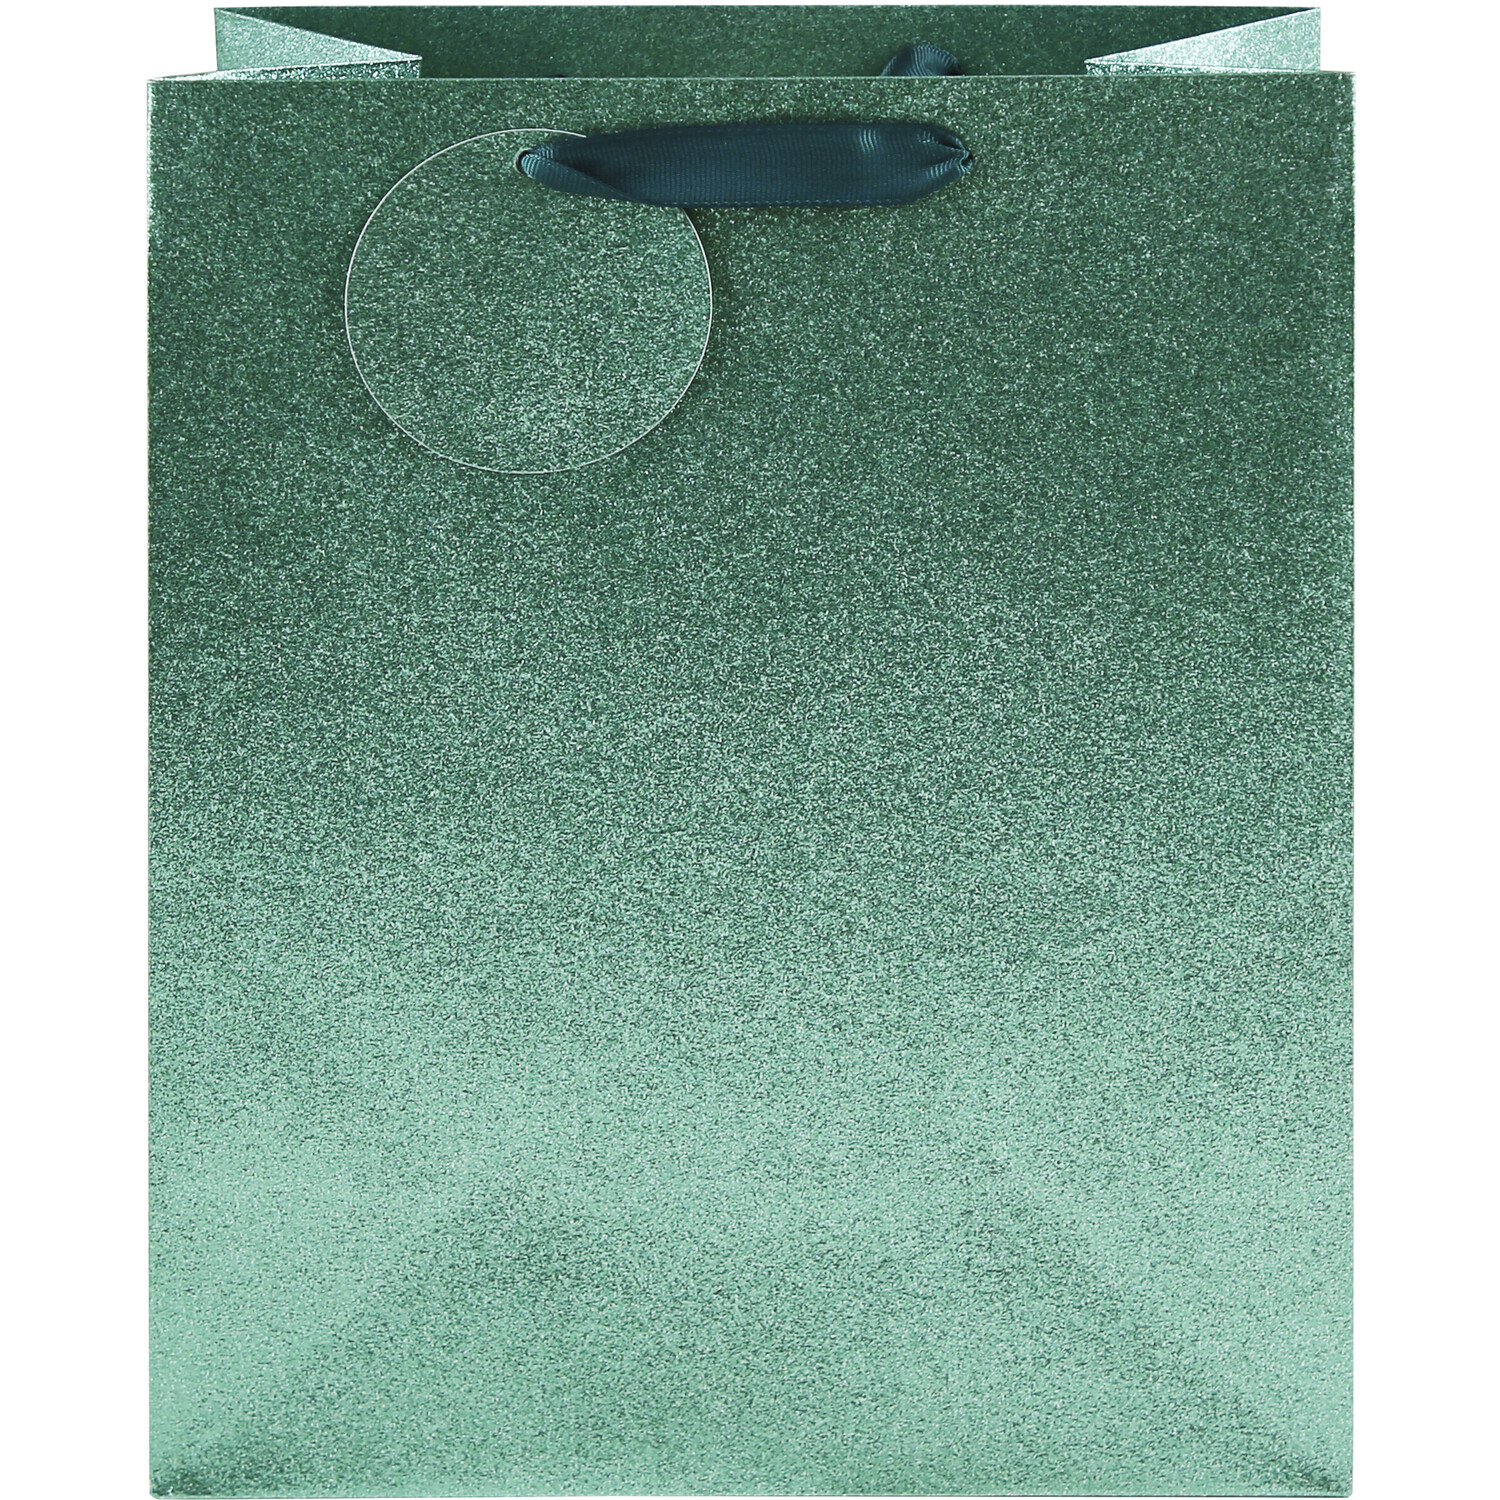 Shimmer Gift Bag - Emerald / Large Image 2